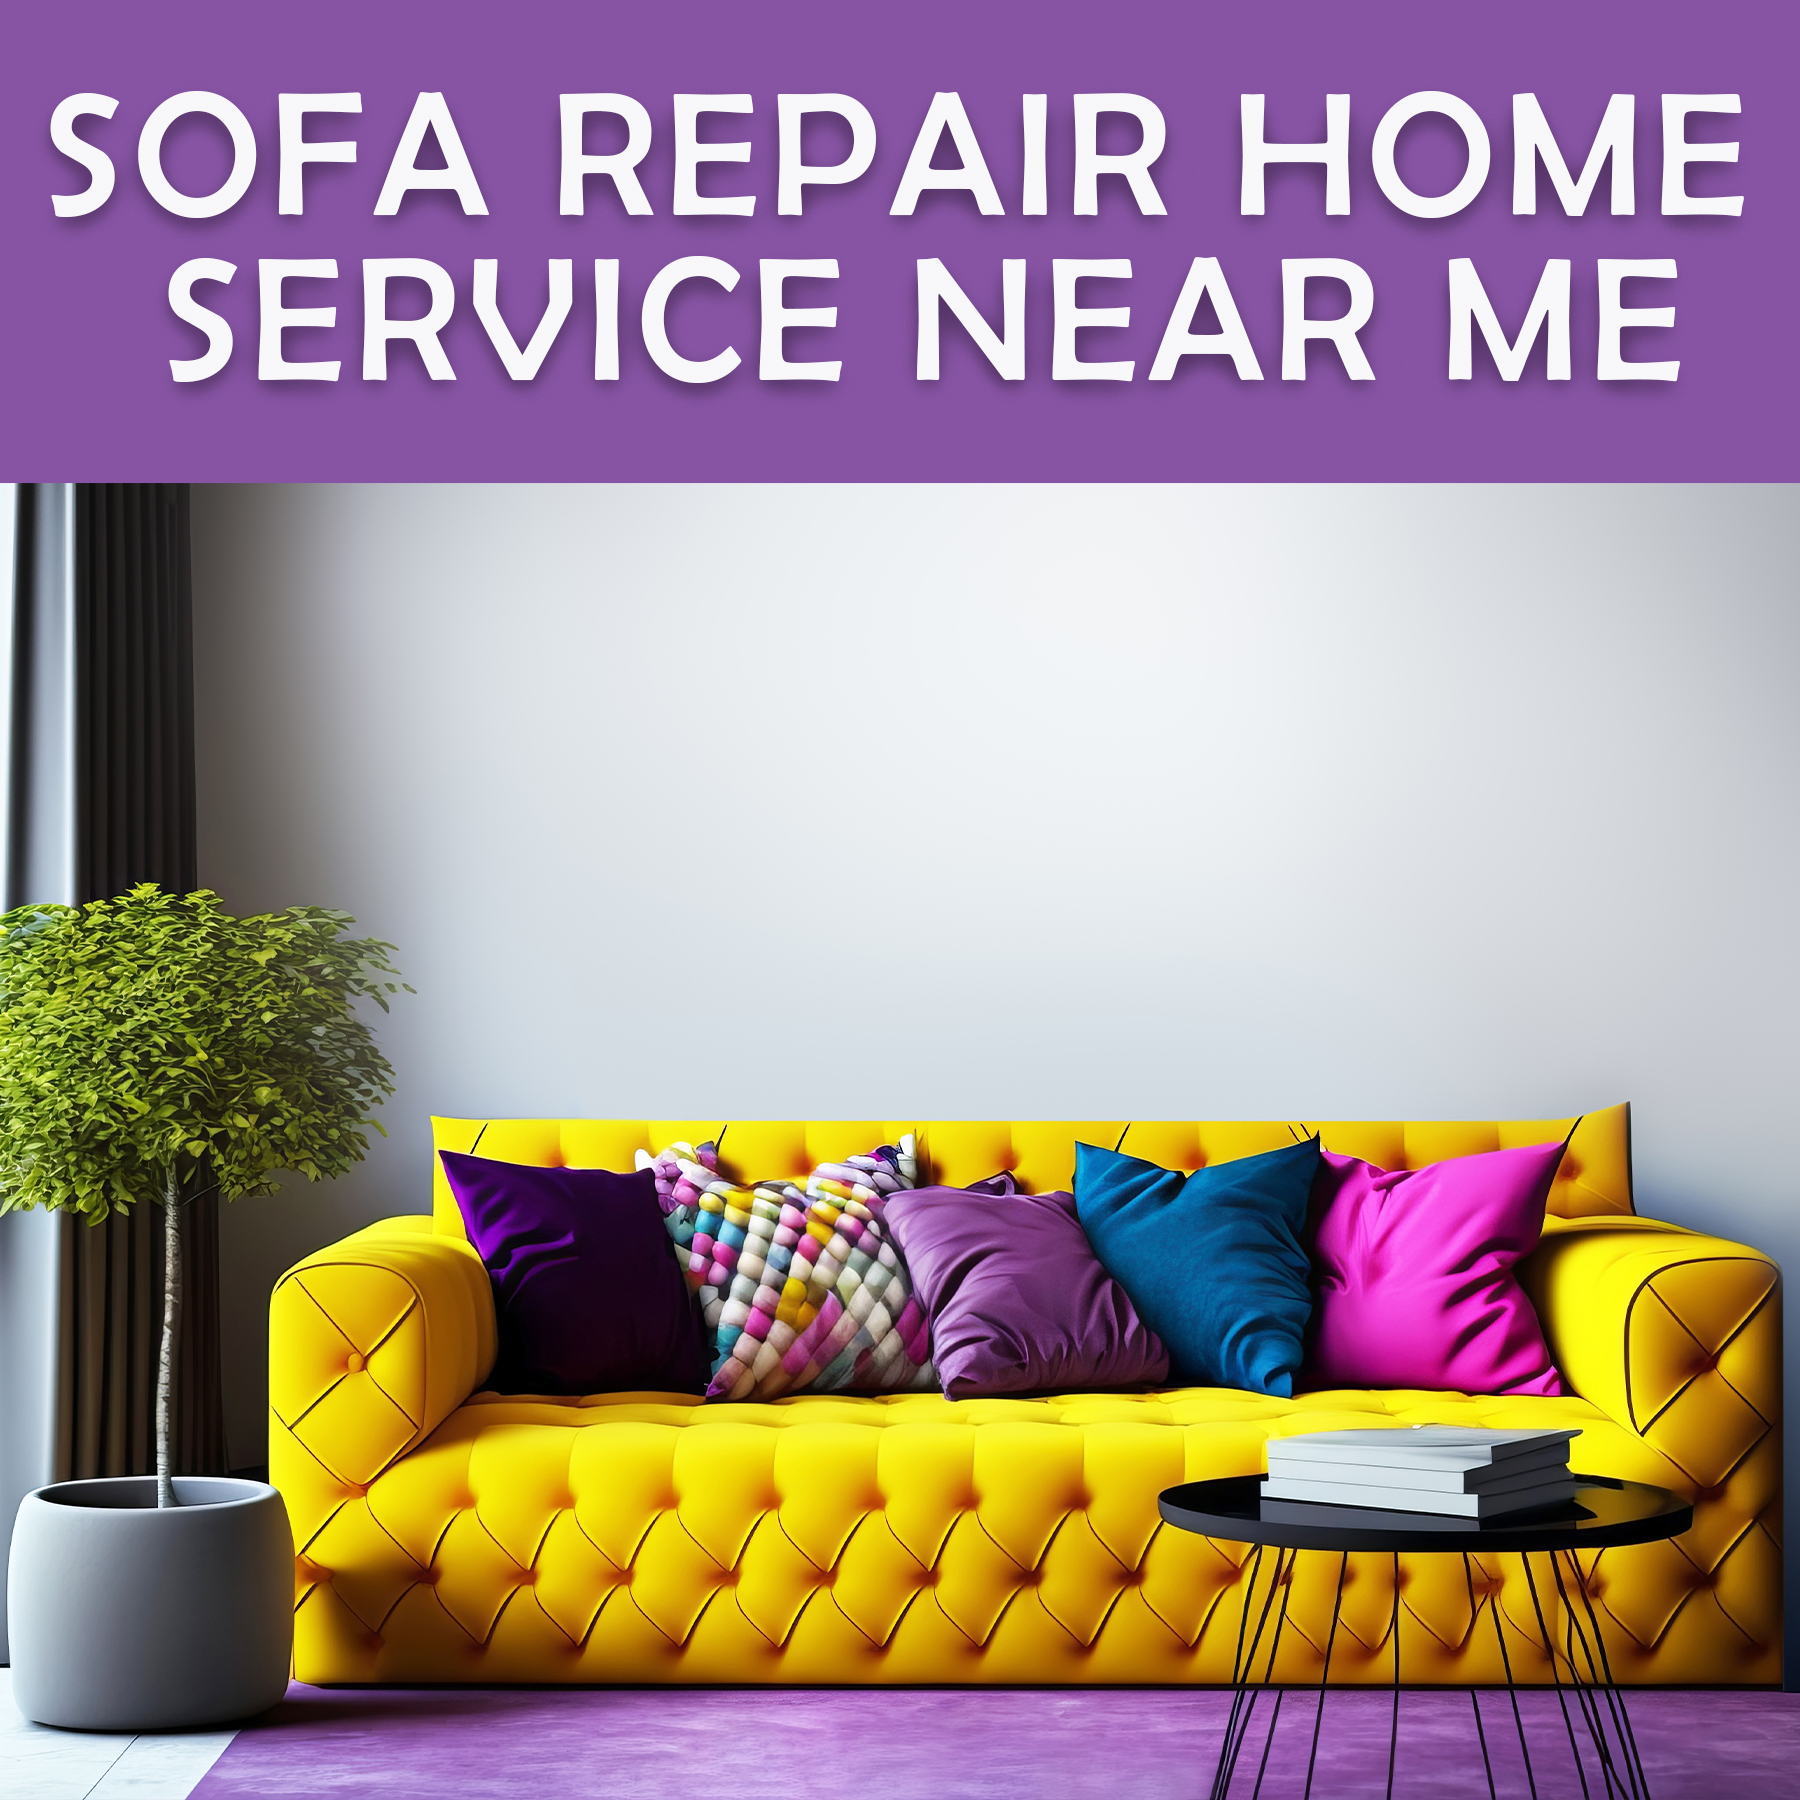 Sofa Repair Home Service Near Me